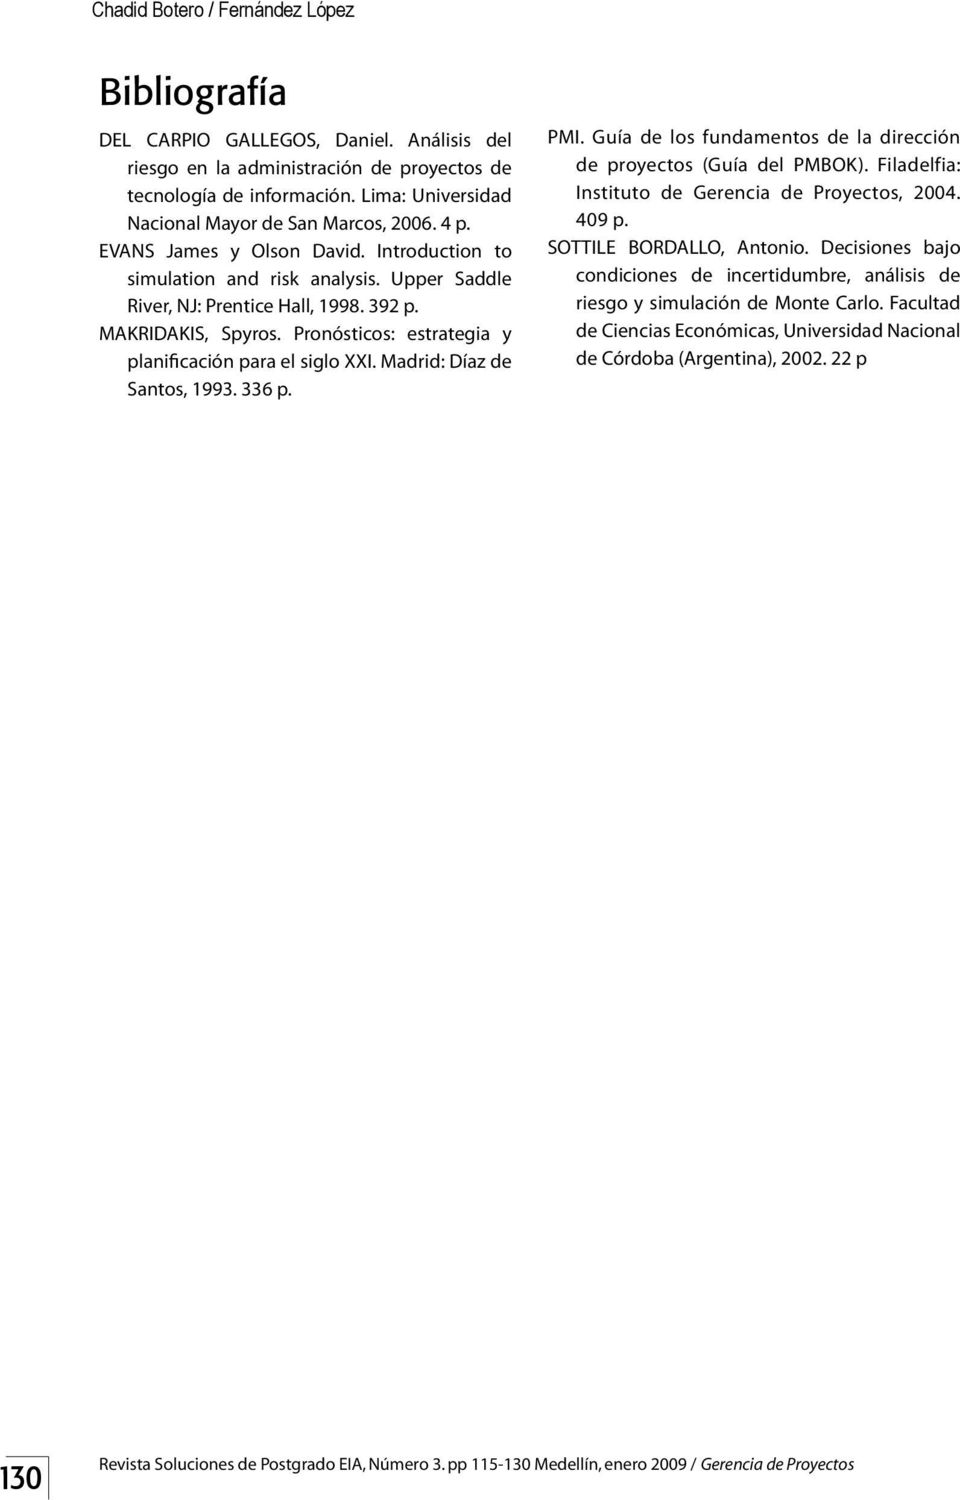 MAKRIDAKIS, Spyros. Pronósticos: estrategia y planificación para el siglo XXI. Madrid: Díaz de Santos, 1993. 336 p. PMI. Guía de los fundamentos de la dirección de proyectos (Guía del PMBOK).